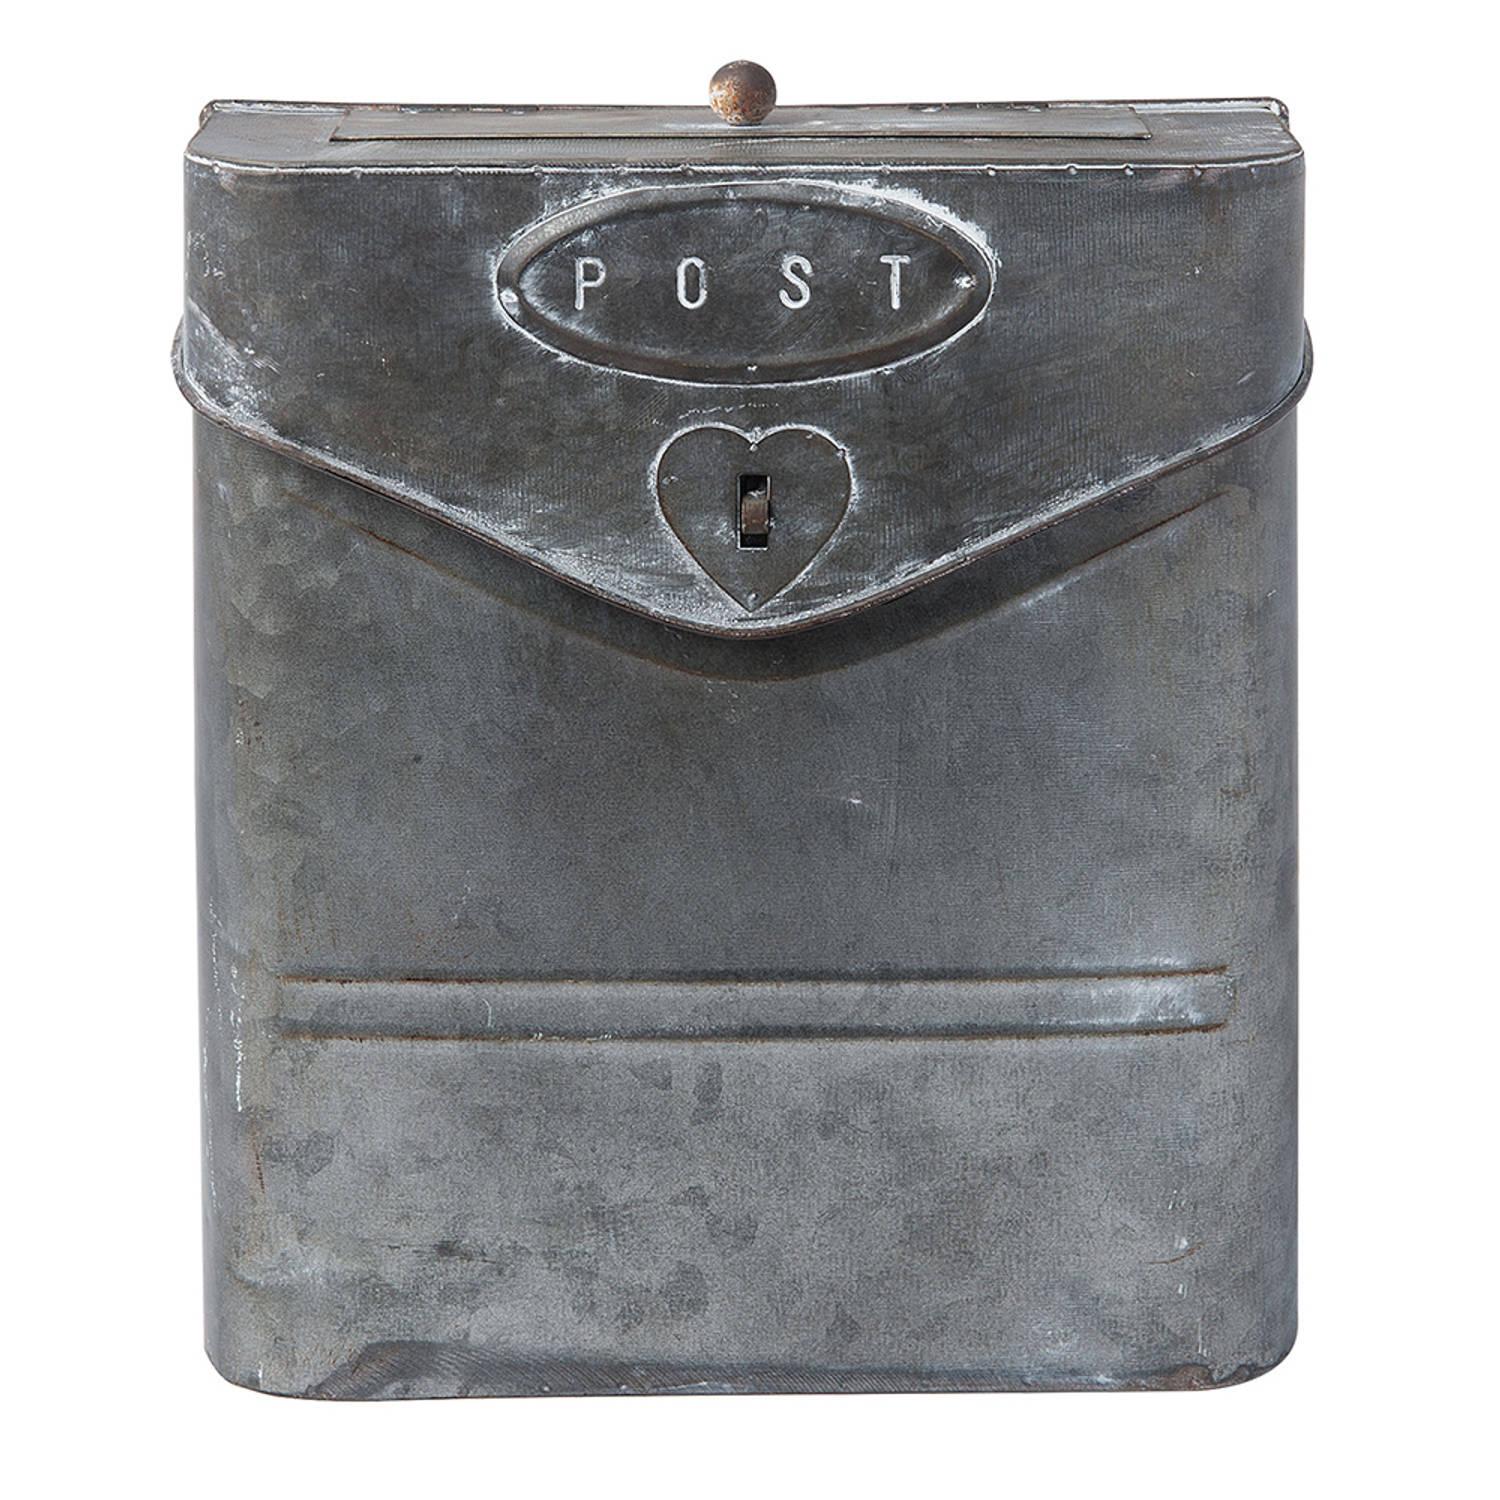 HAES DECO - Brievenbus vintage grijs metaal met Hartje en tekst "POST", formaat 24x8x29 cm